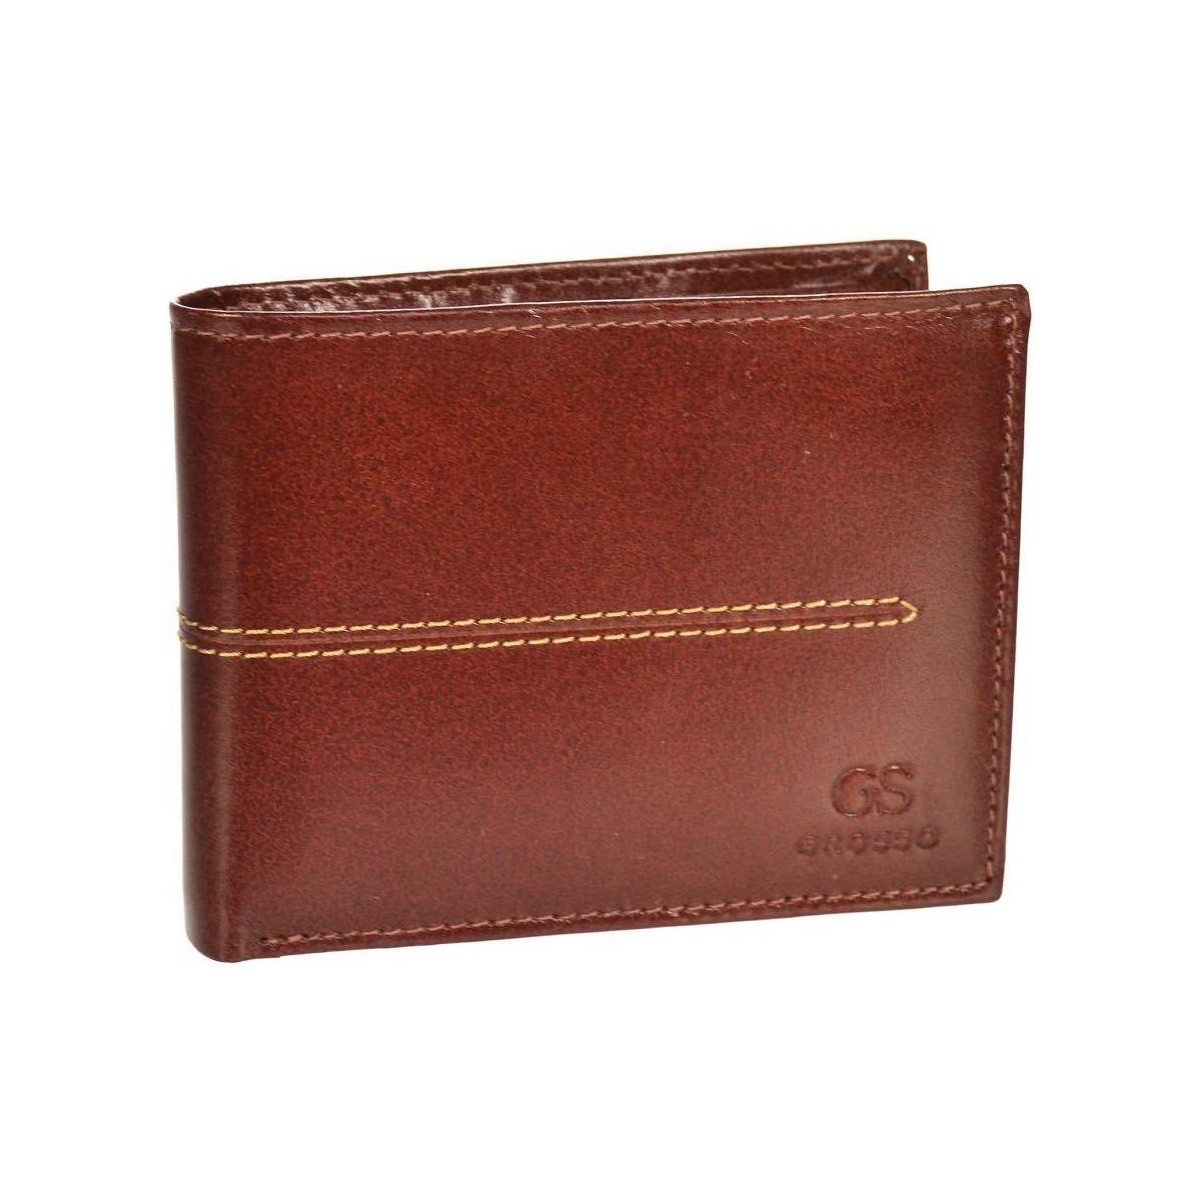 Taška Muži Náprsní tašky Grosso Koňakově hnědá pánská kožená peněženka RFID v krabičce Hnědá